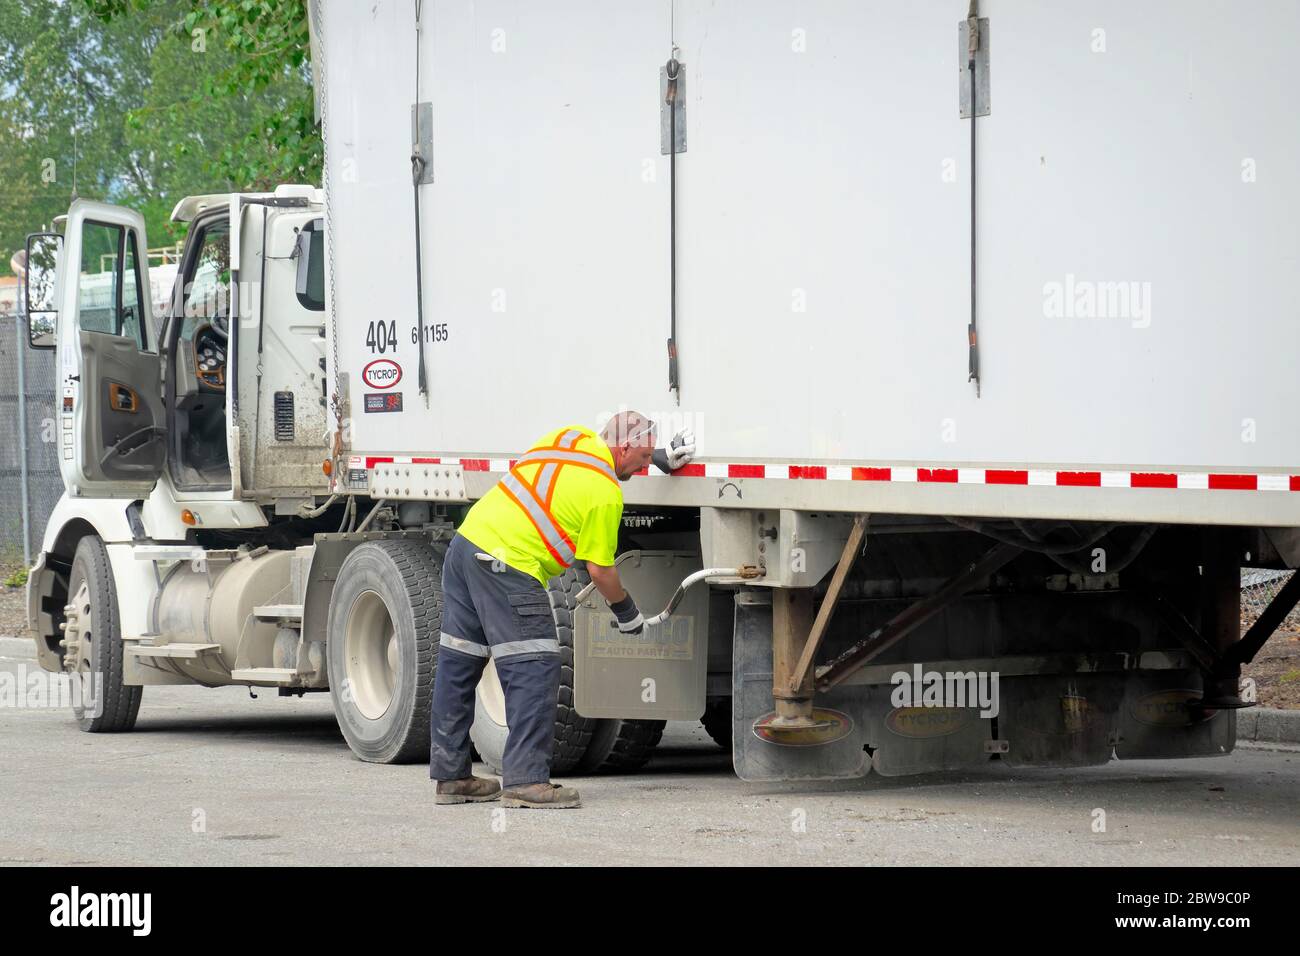 Un conductor de camión que lleva chaleco de seguridad y guantes de trabajo realiza ajustes en un camión semirremolque blanco. Foto de stock. Foto de stock